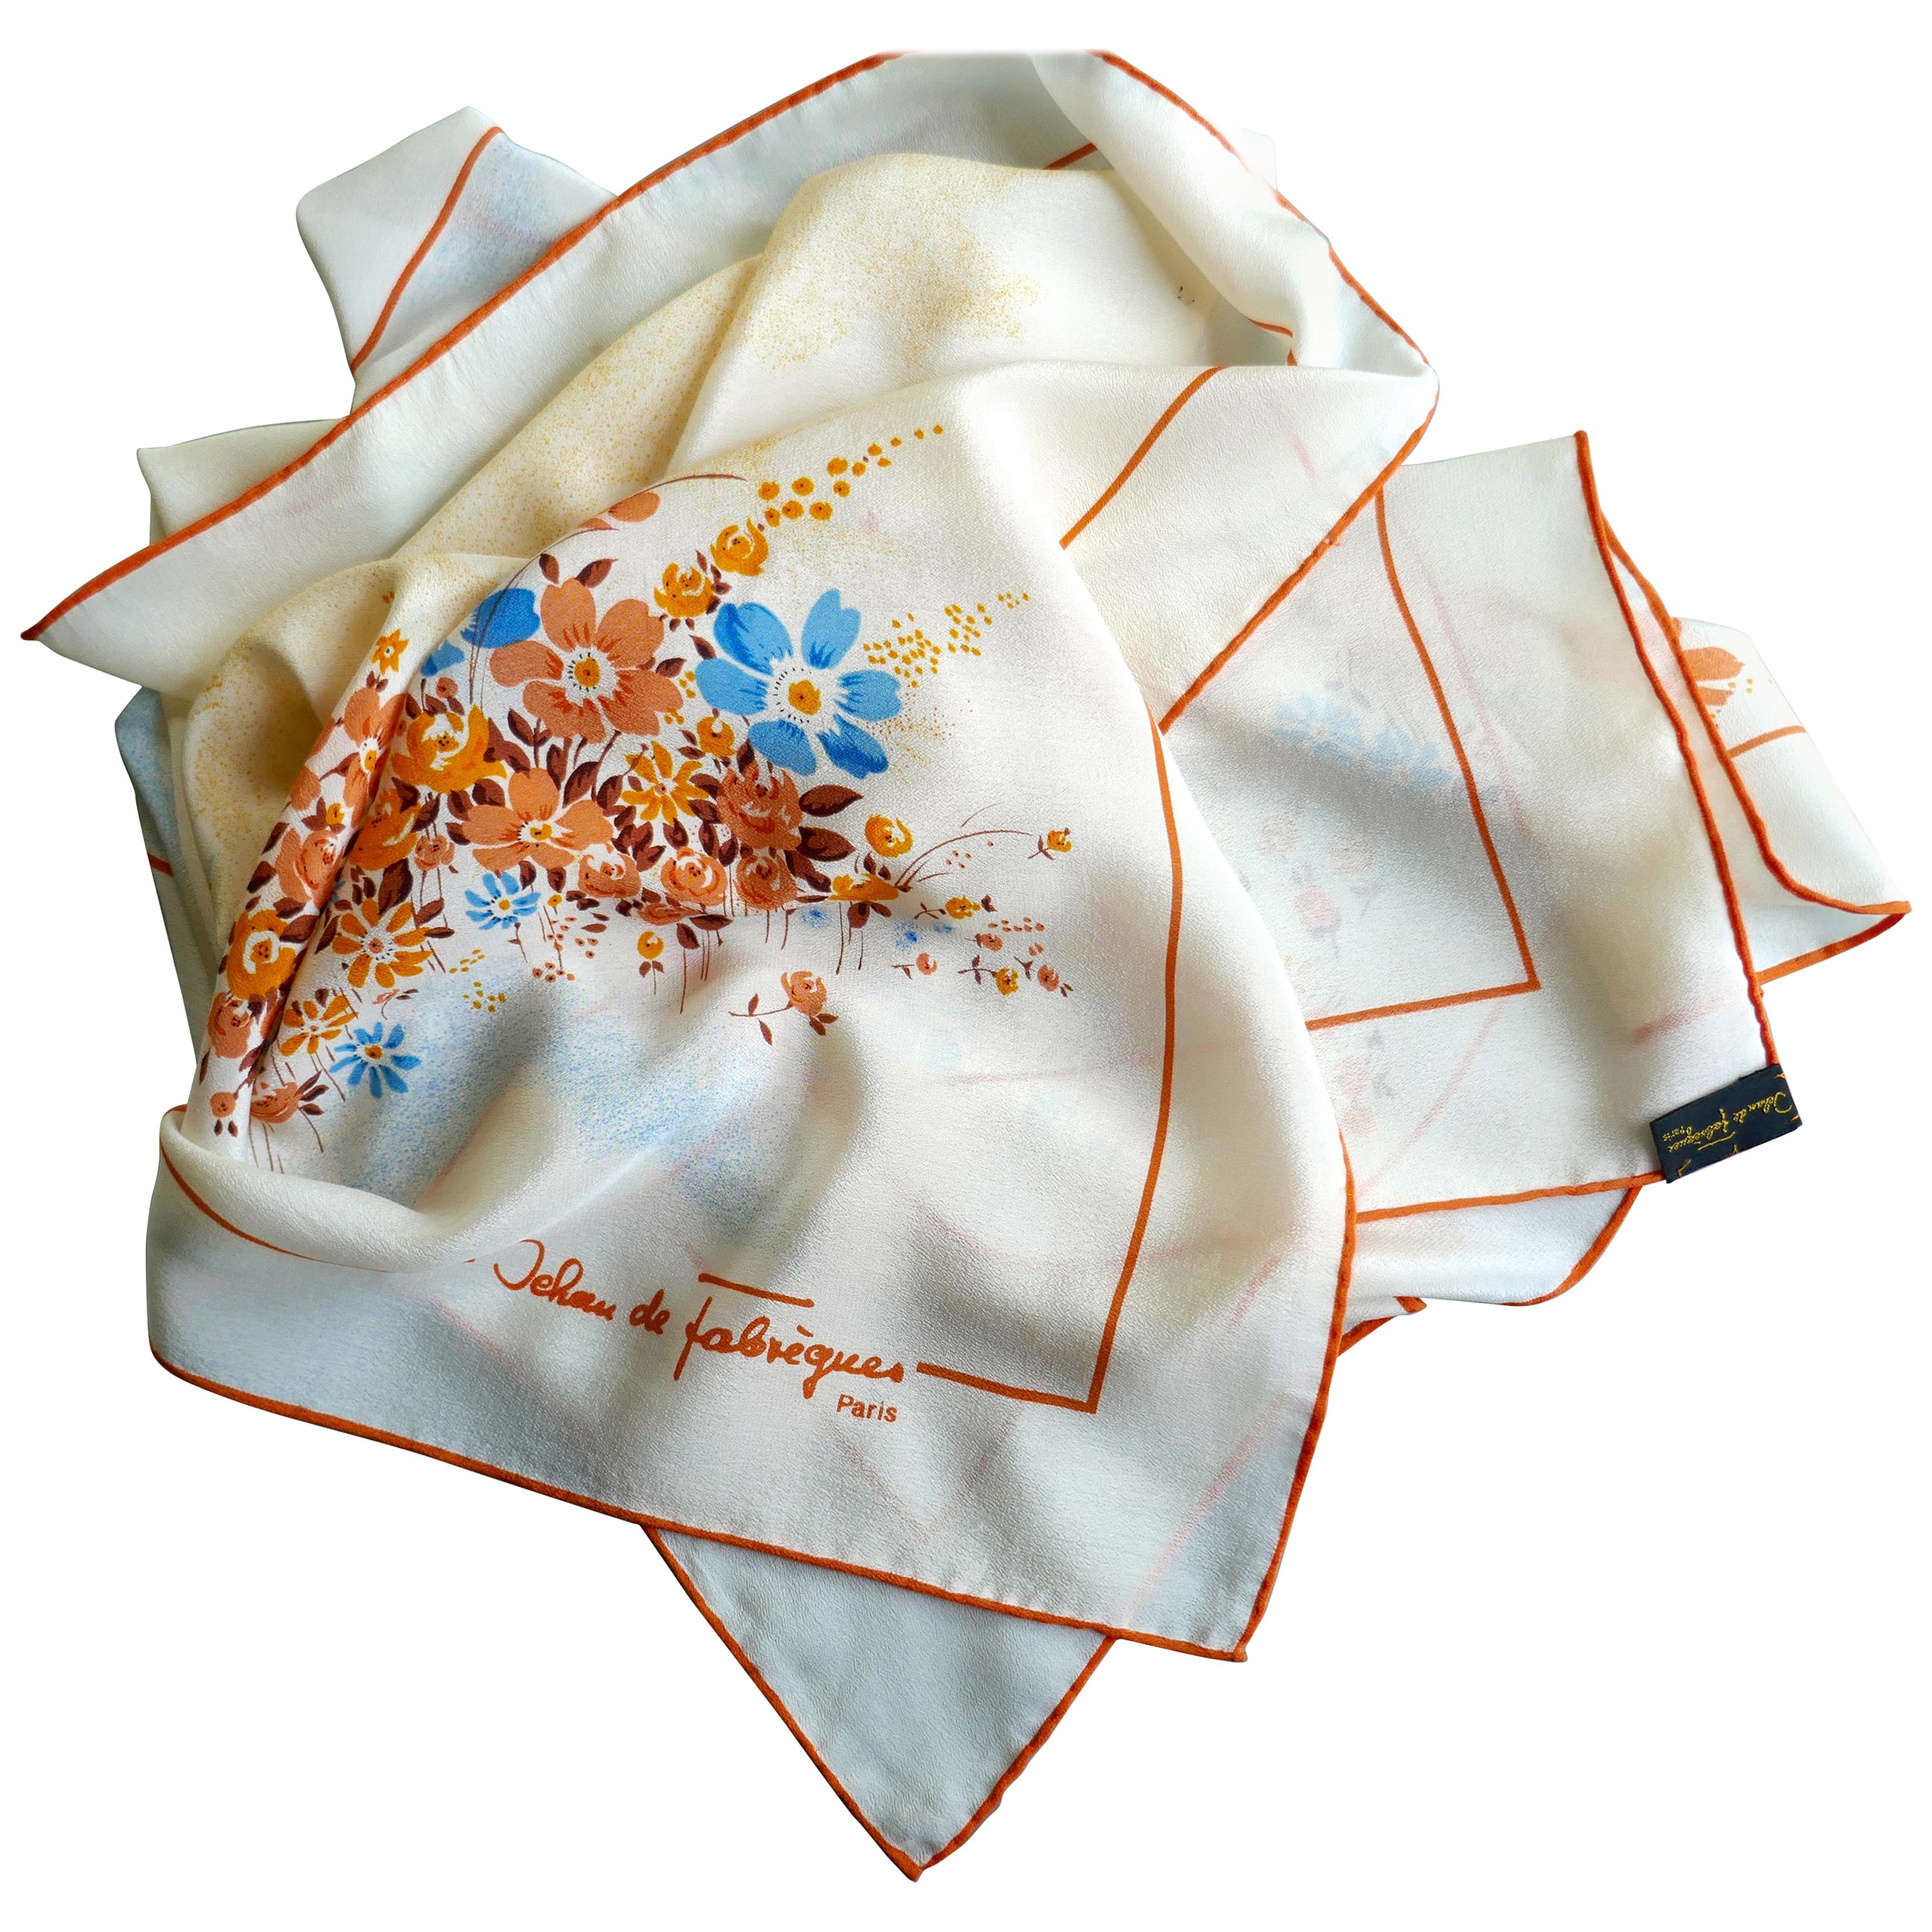 Merveilleuse écharpe en crêpe de Chine des années 1980 par Jean de Fabrèques Paris Jeanne Damas